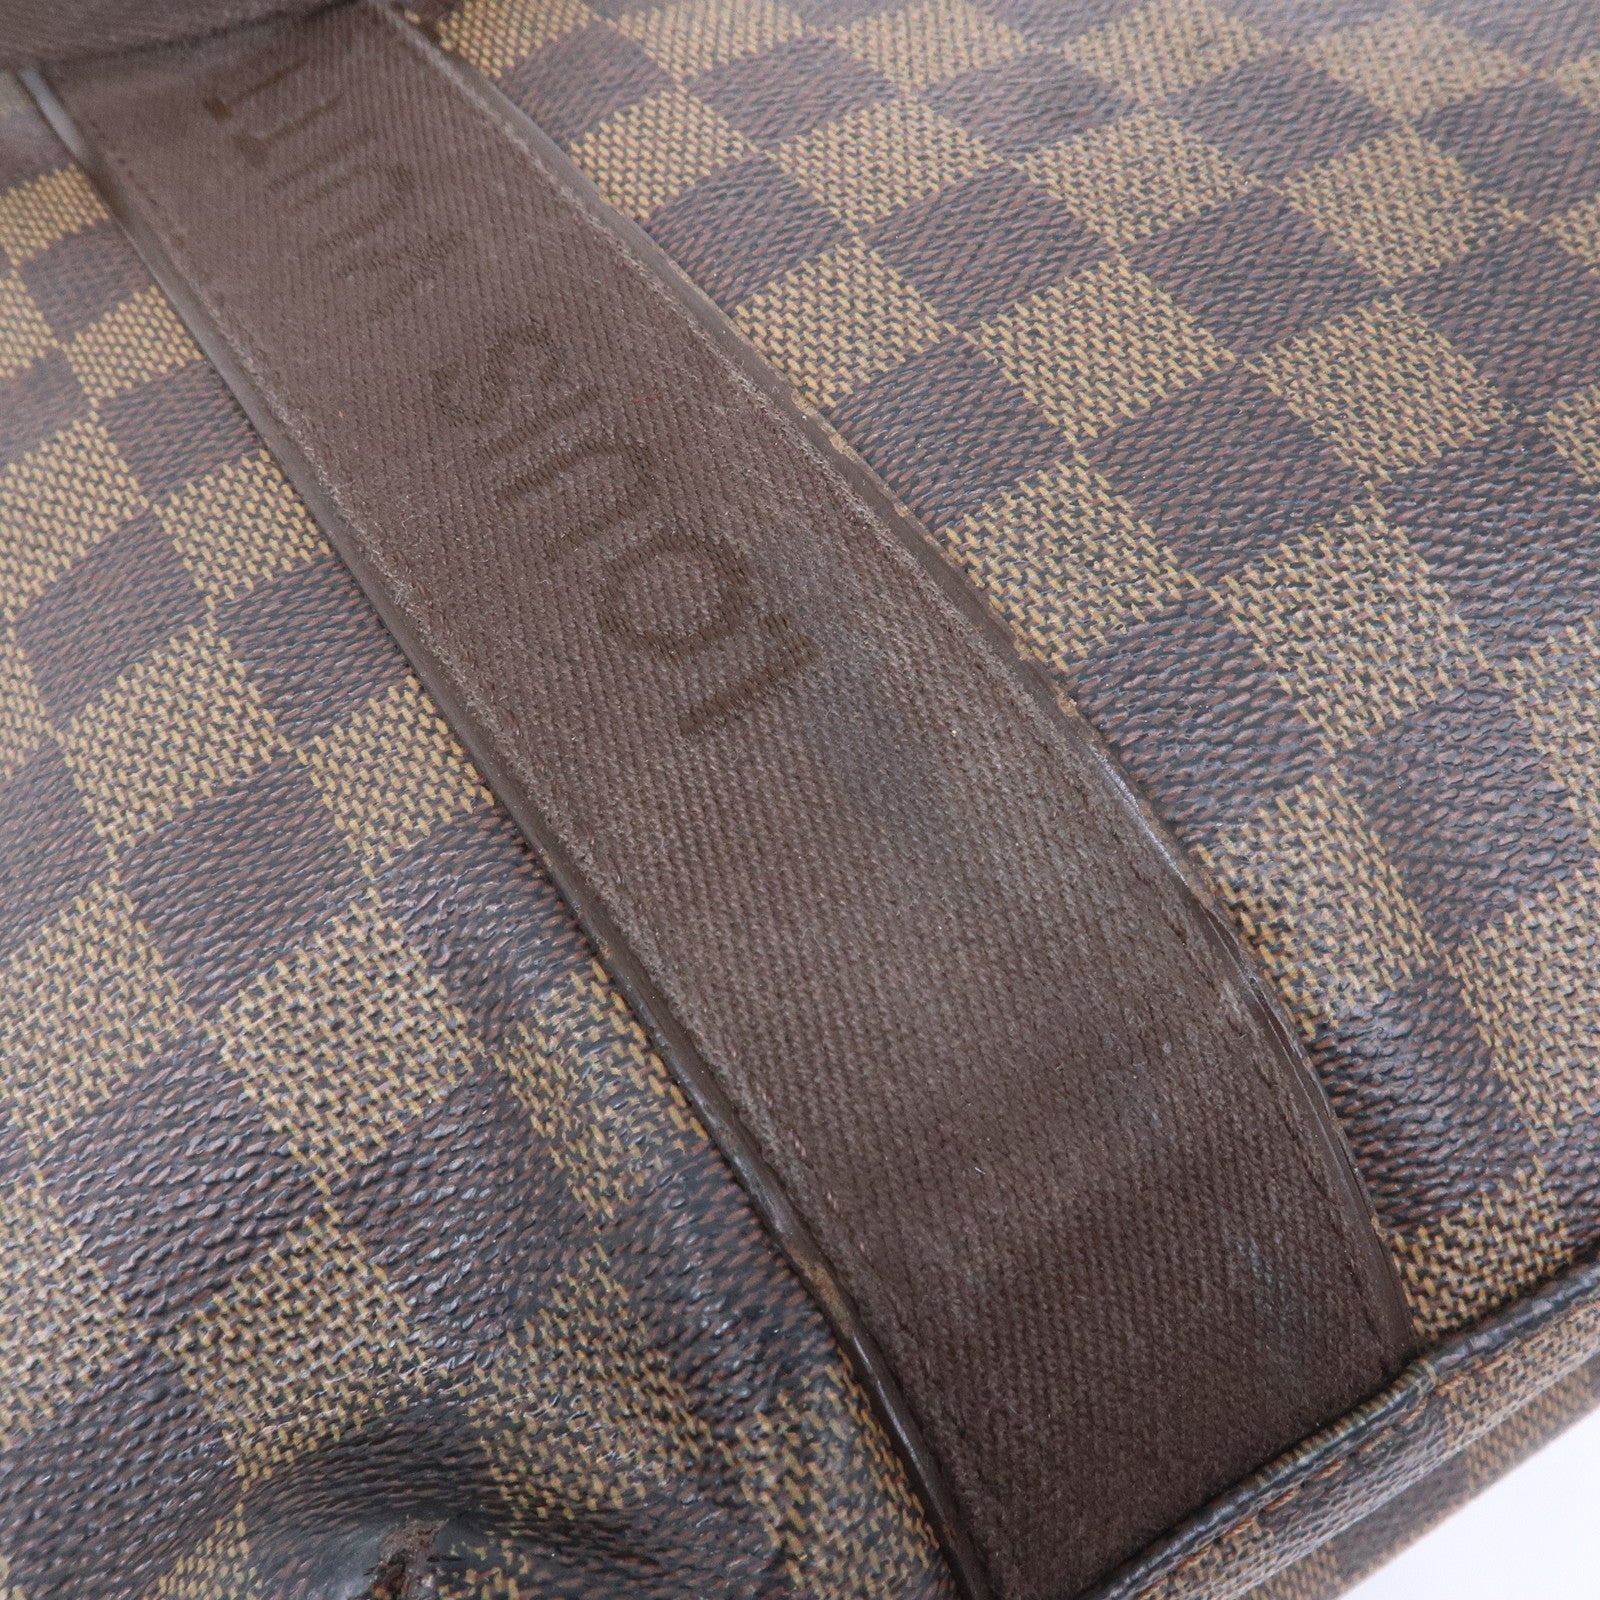 Louis-Vuitton-Set-of-10-Dust-Bag-Beige – dct-ep_vintage luxury Store